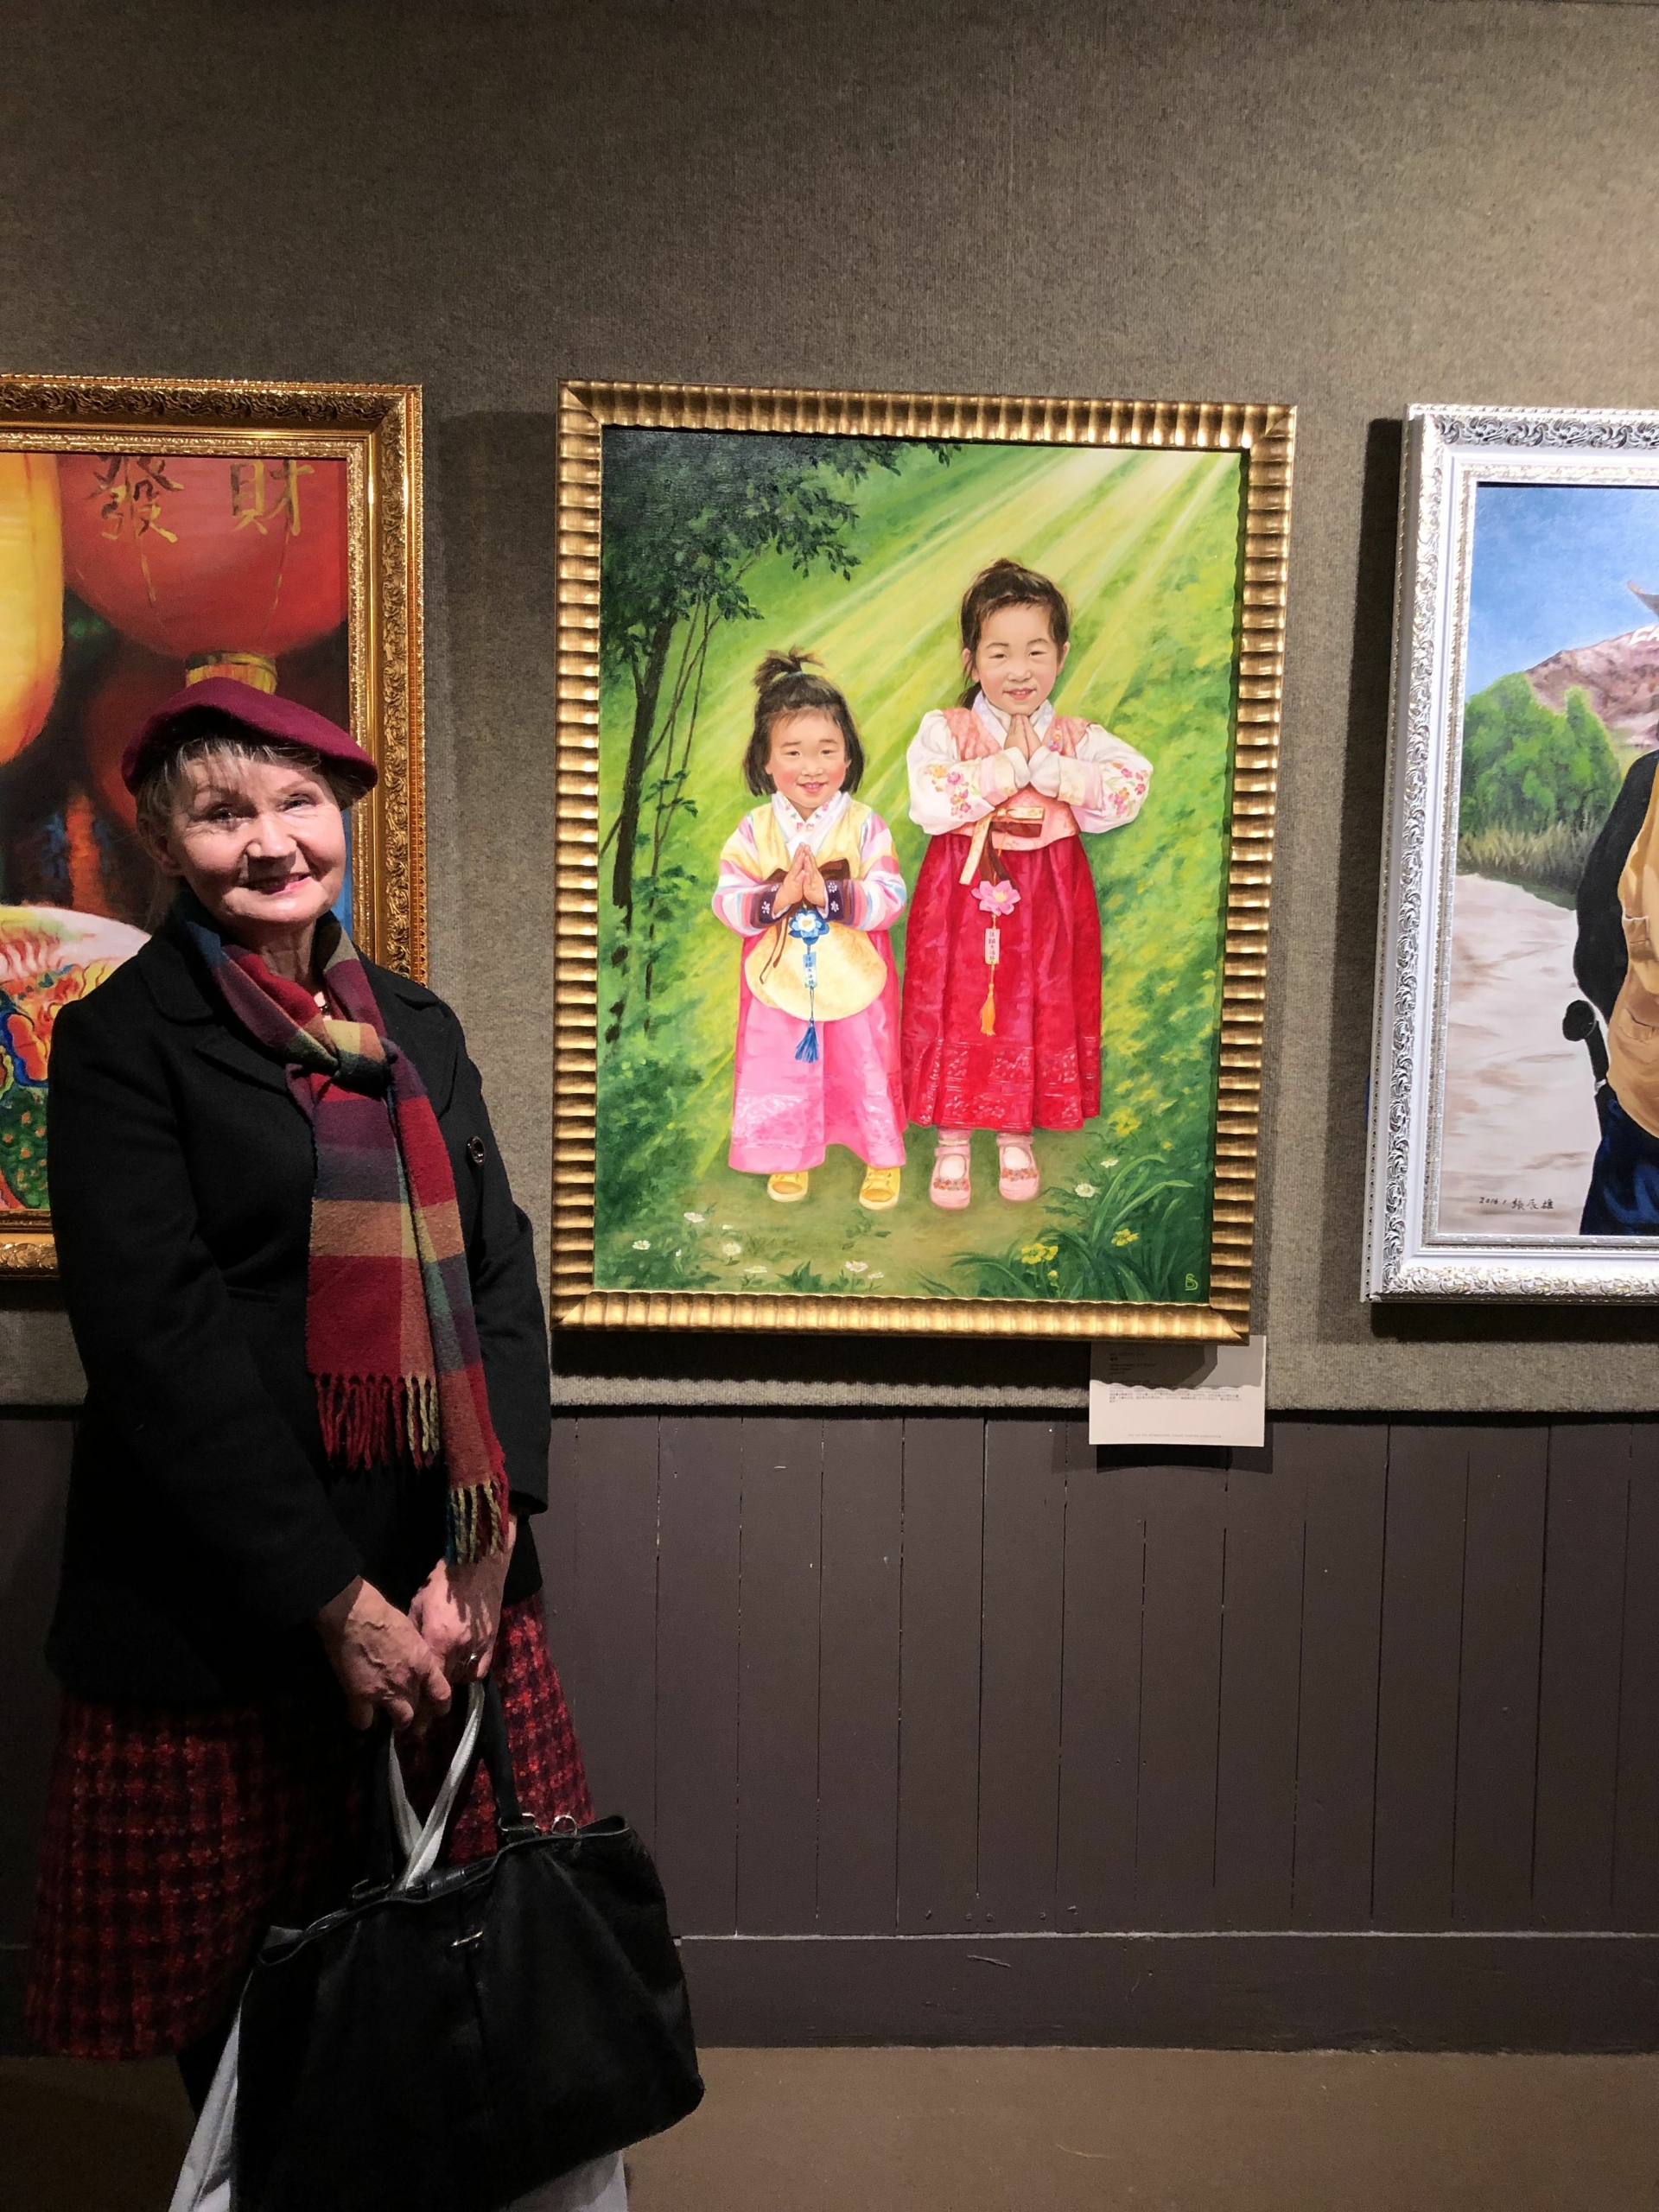 Họa sĩ Barbara Schafer và tác phẩm tranh sơn dầu “Gratitude” (Lòng biết ơn) trong triển lãm tại Cuộc thi Vẽ tranh Nhân vật Quốc tế NTD năm 2019 ở New York. (Ảnh: Đăng dưới sự cho phép của bà Barbara Schafer)